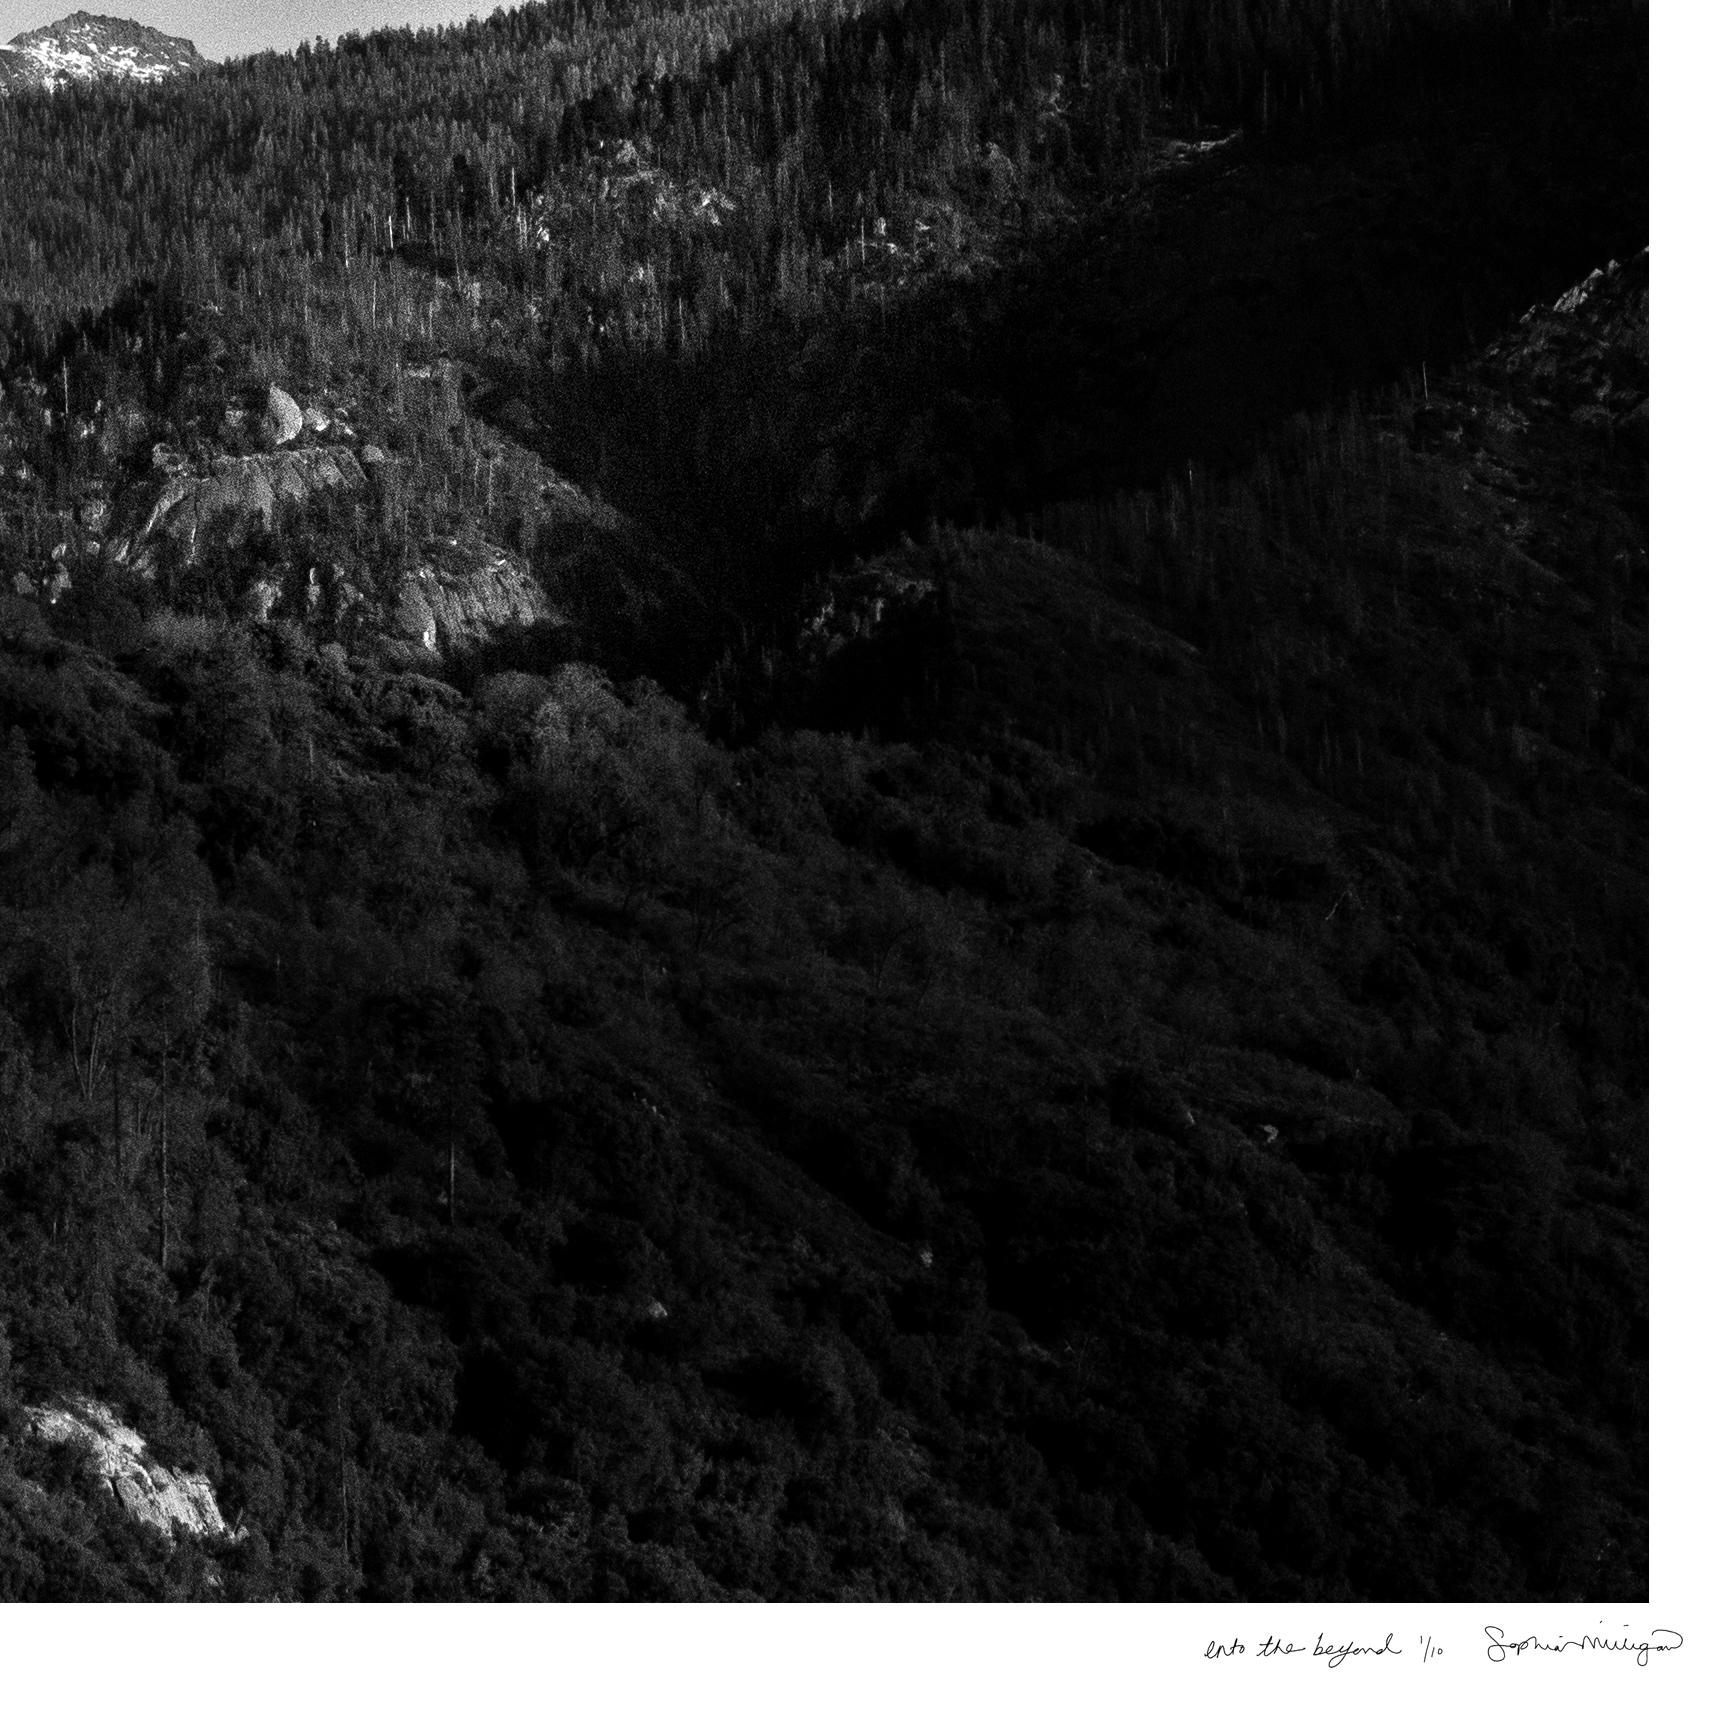 Ins Jenseits 
Limitierte Auflage einer Archivfotografie. Ungerahmt, handsigniert und nummeriert
_________________
Gemalte Lichtpunkte tanzen über die vielschichtige Berglandschaft der Sierra Nevada in Kalifornien. 
Sophias poetische Fotografien sind